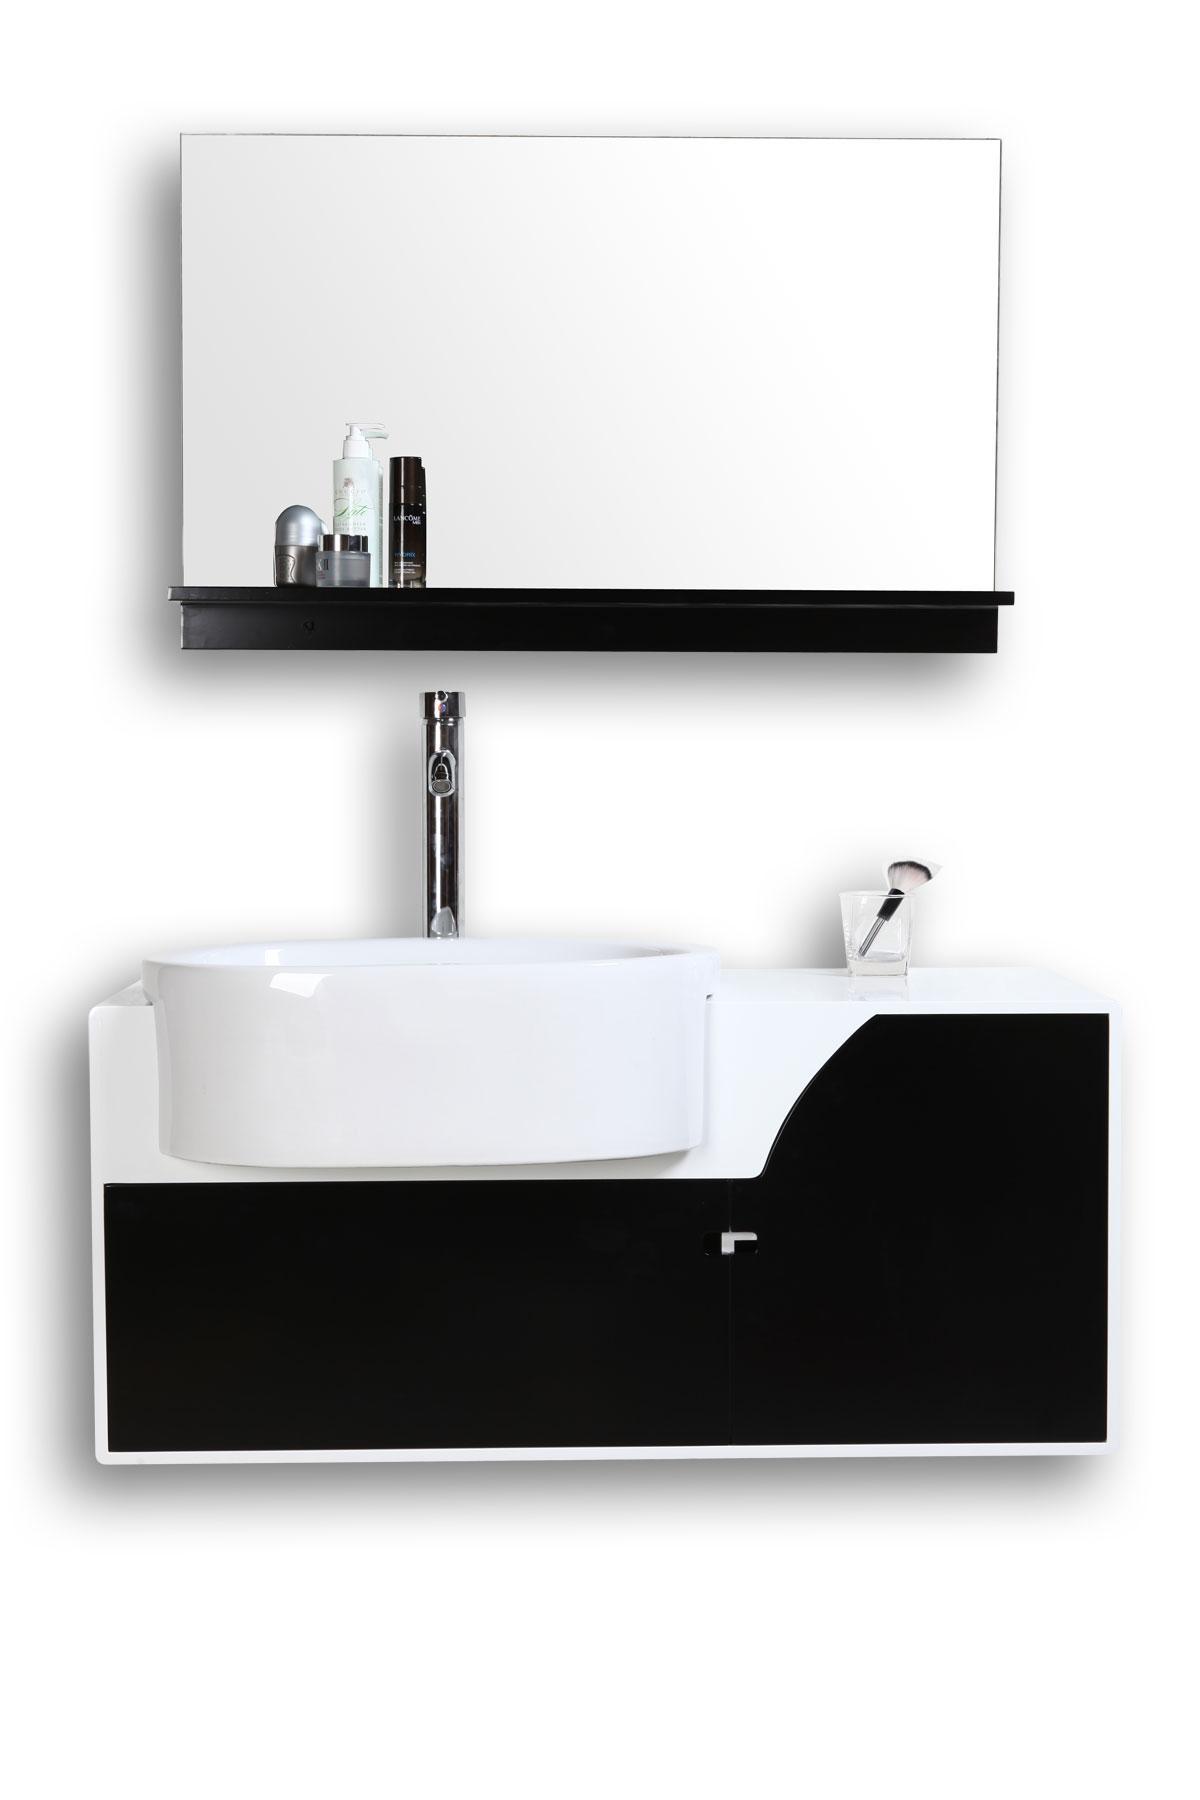 Foto Conjunto de muebles de baño: lavabo, armario y espejo JASPER foto 41669